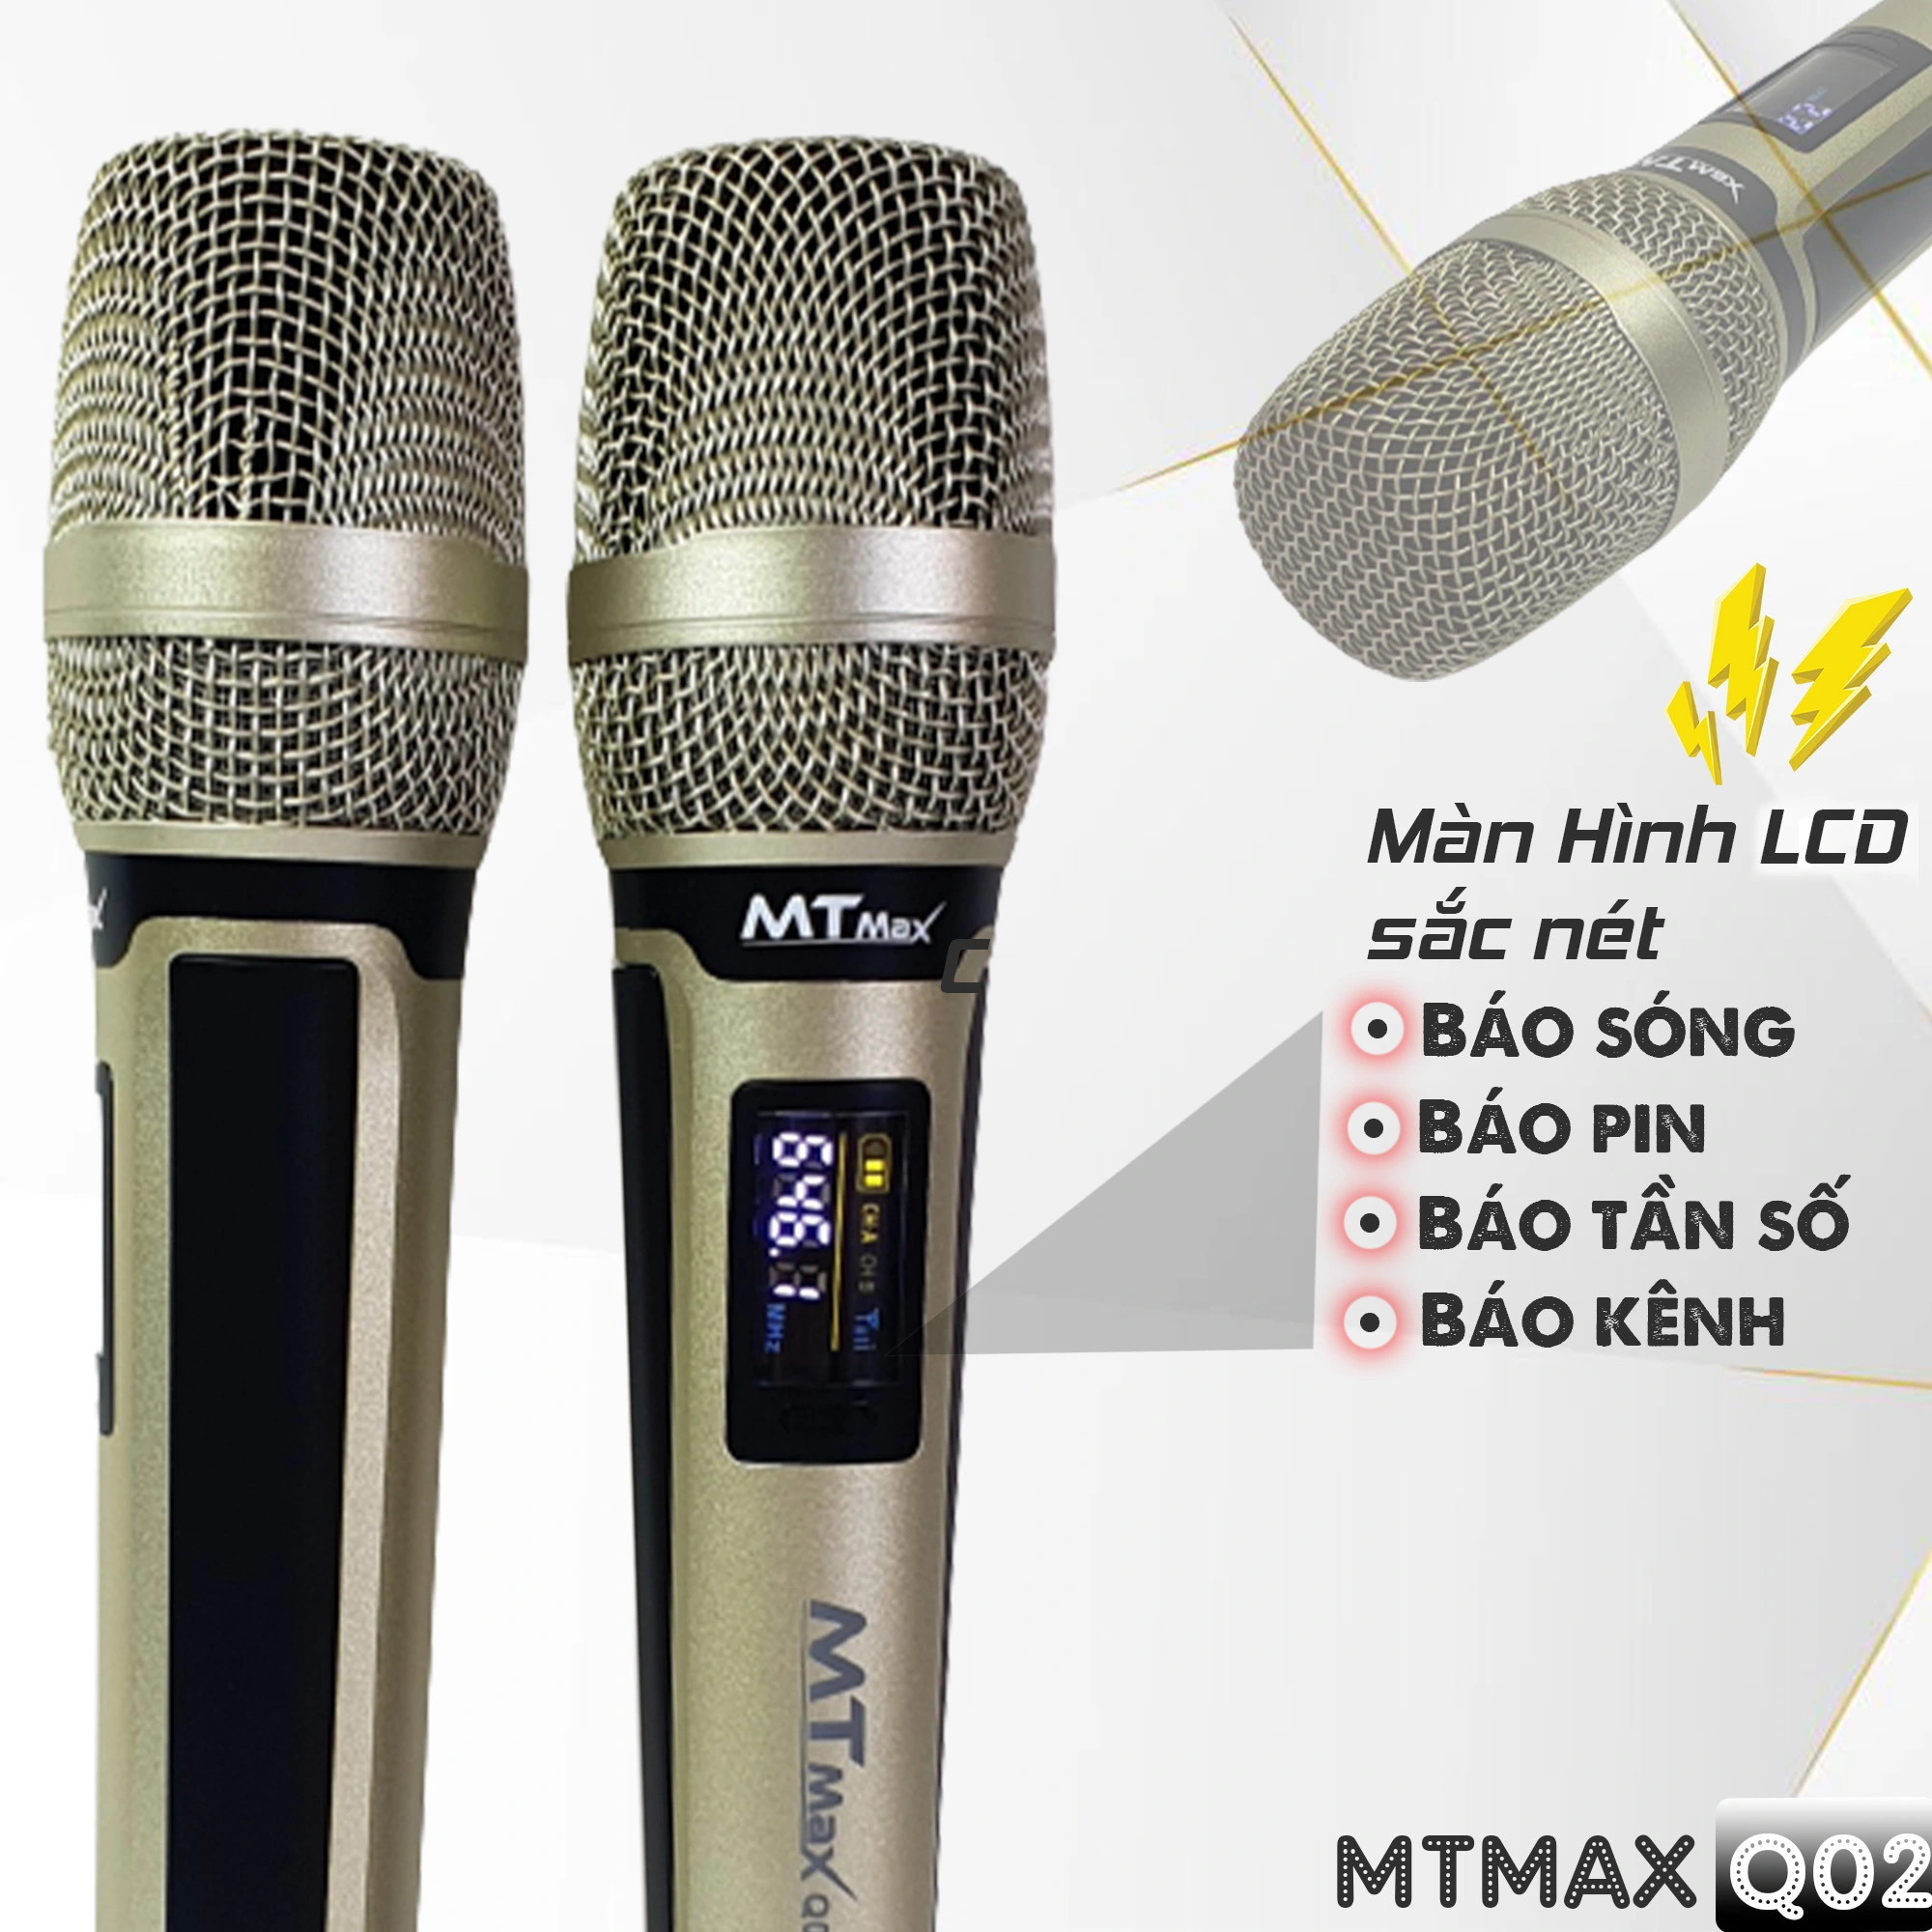 Hình ảnh Micro không dây đa năng MTMAX Q02 - Micro không dây giá tốt, sử dụng cho mọi loại thiết bị âm thanh - Micro dành cho loa kéo, loa bluetooth, amply - Màn hình Led hiển thị thông số - Âm thanh cực hay, giá cực rẻ